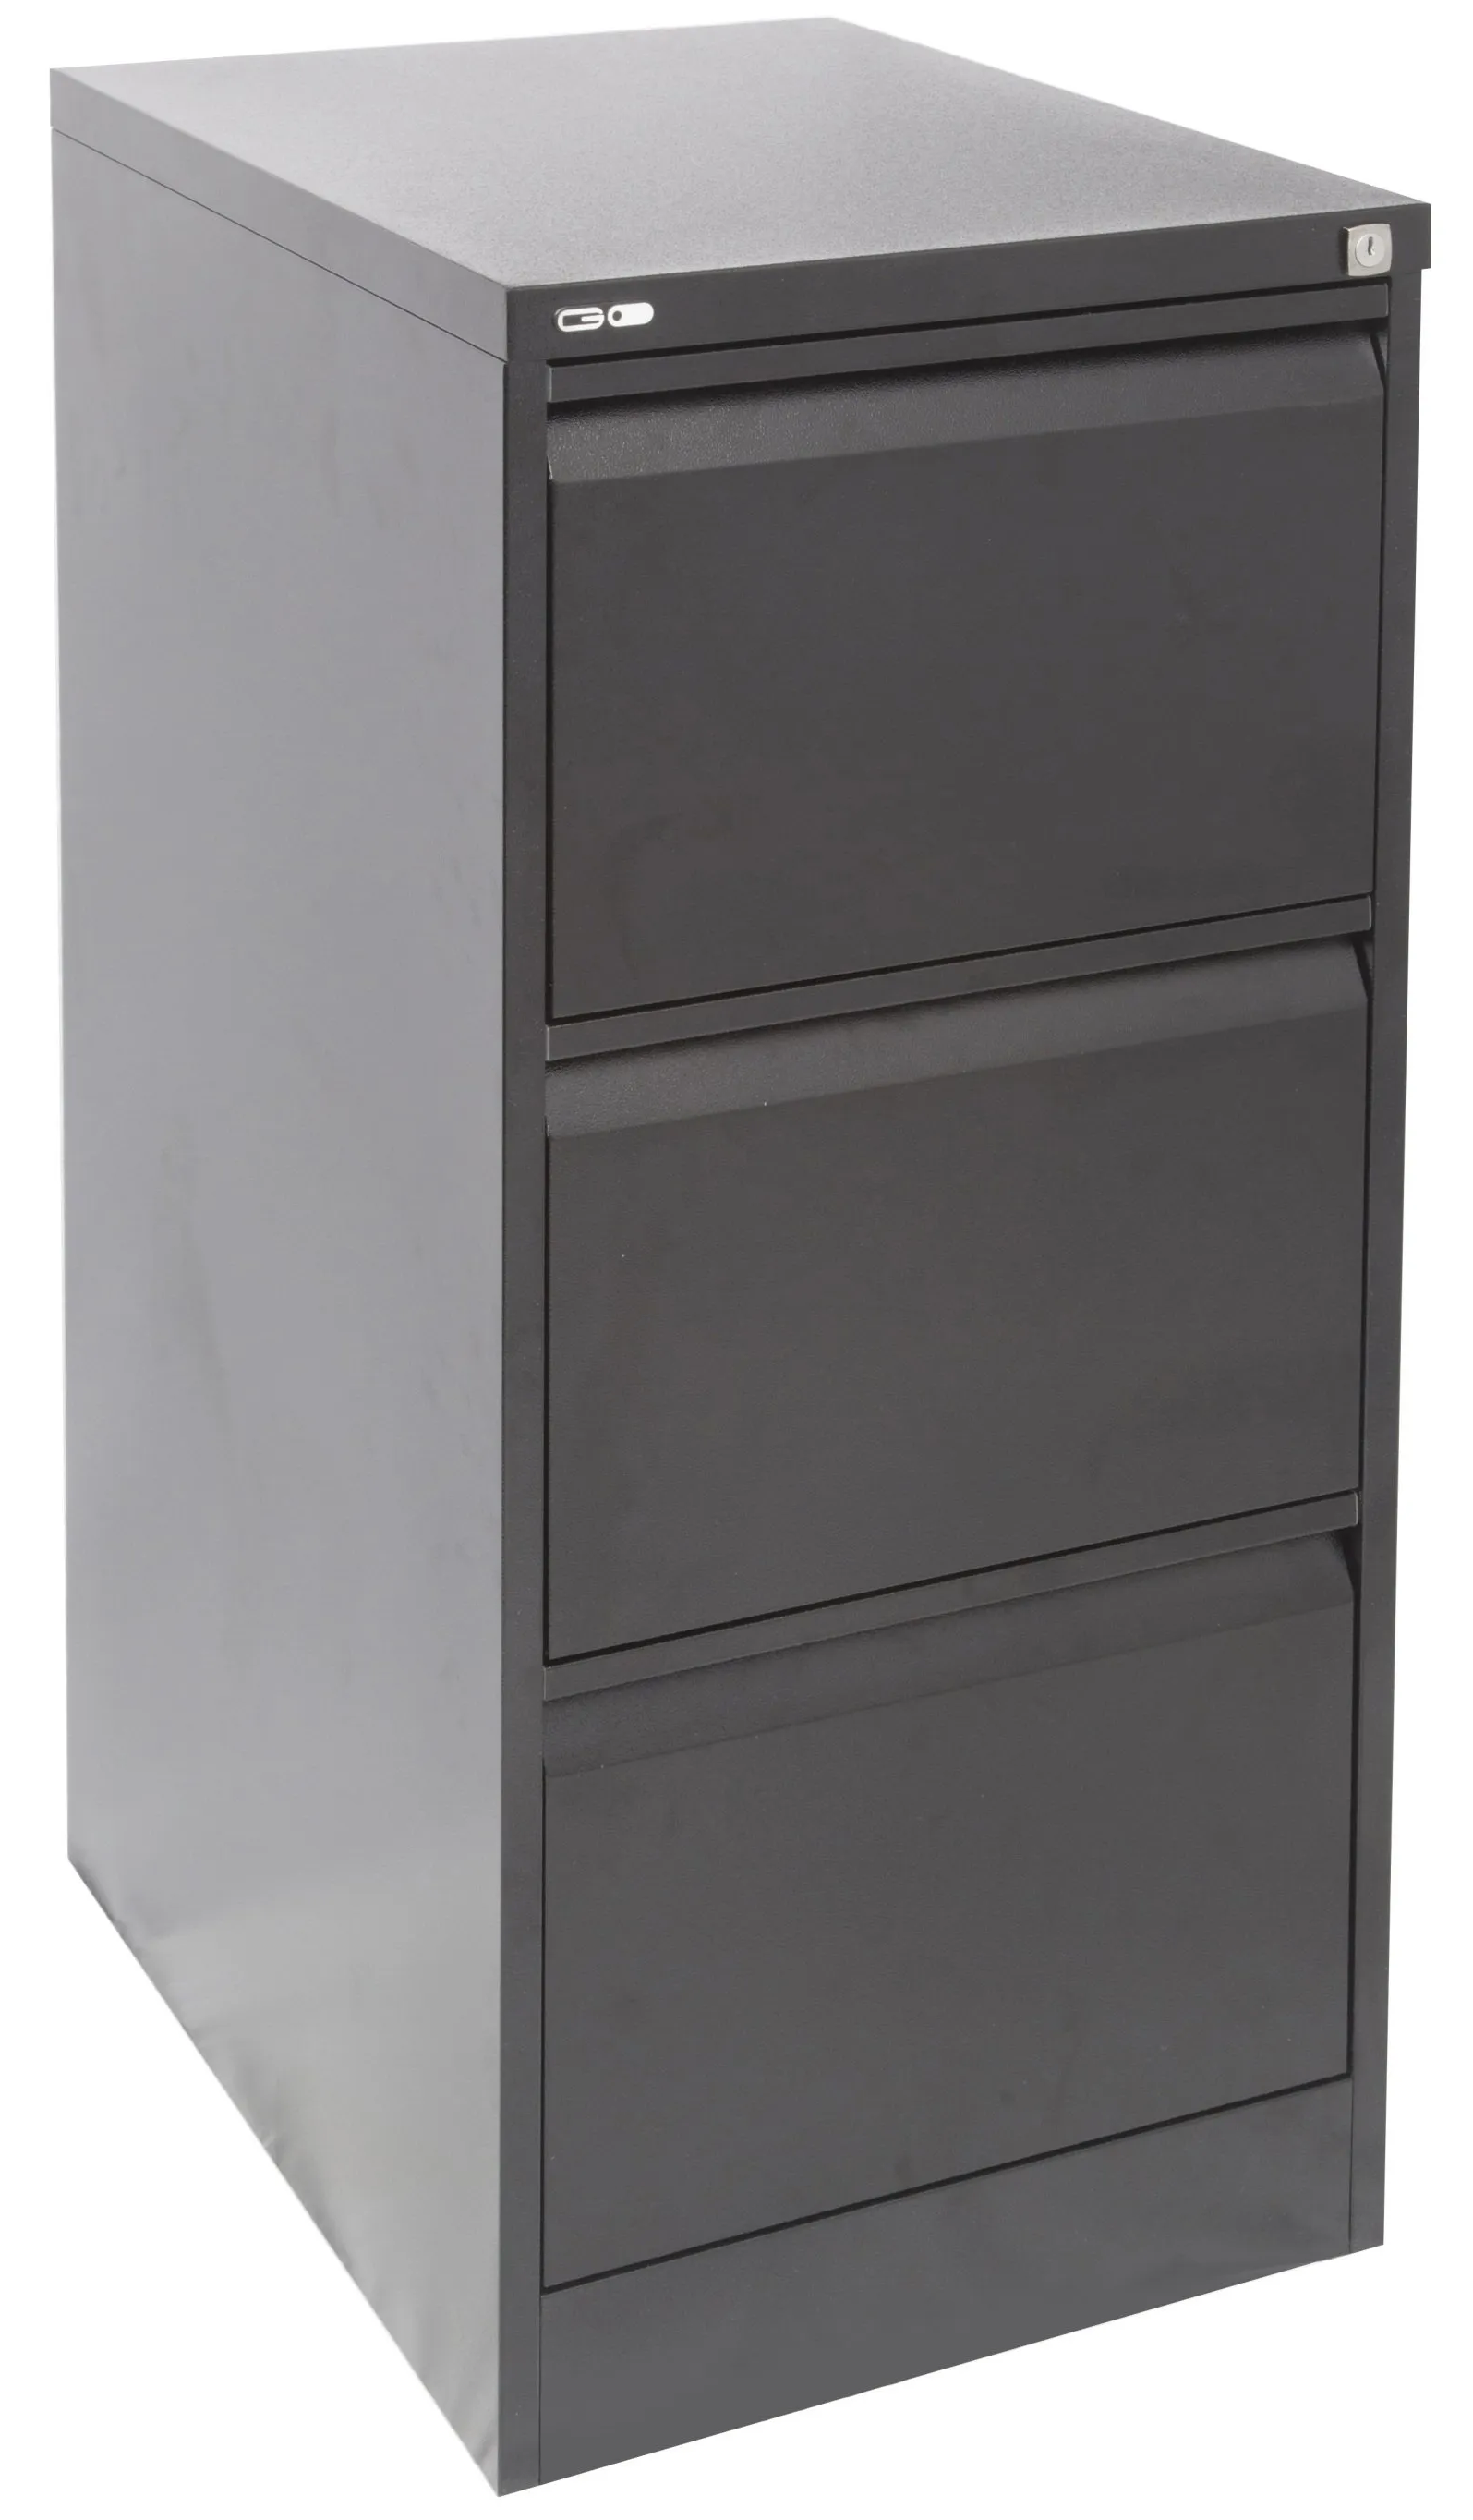 3 drawer metal filing cabinet black ripple